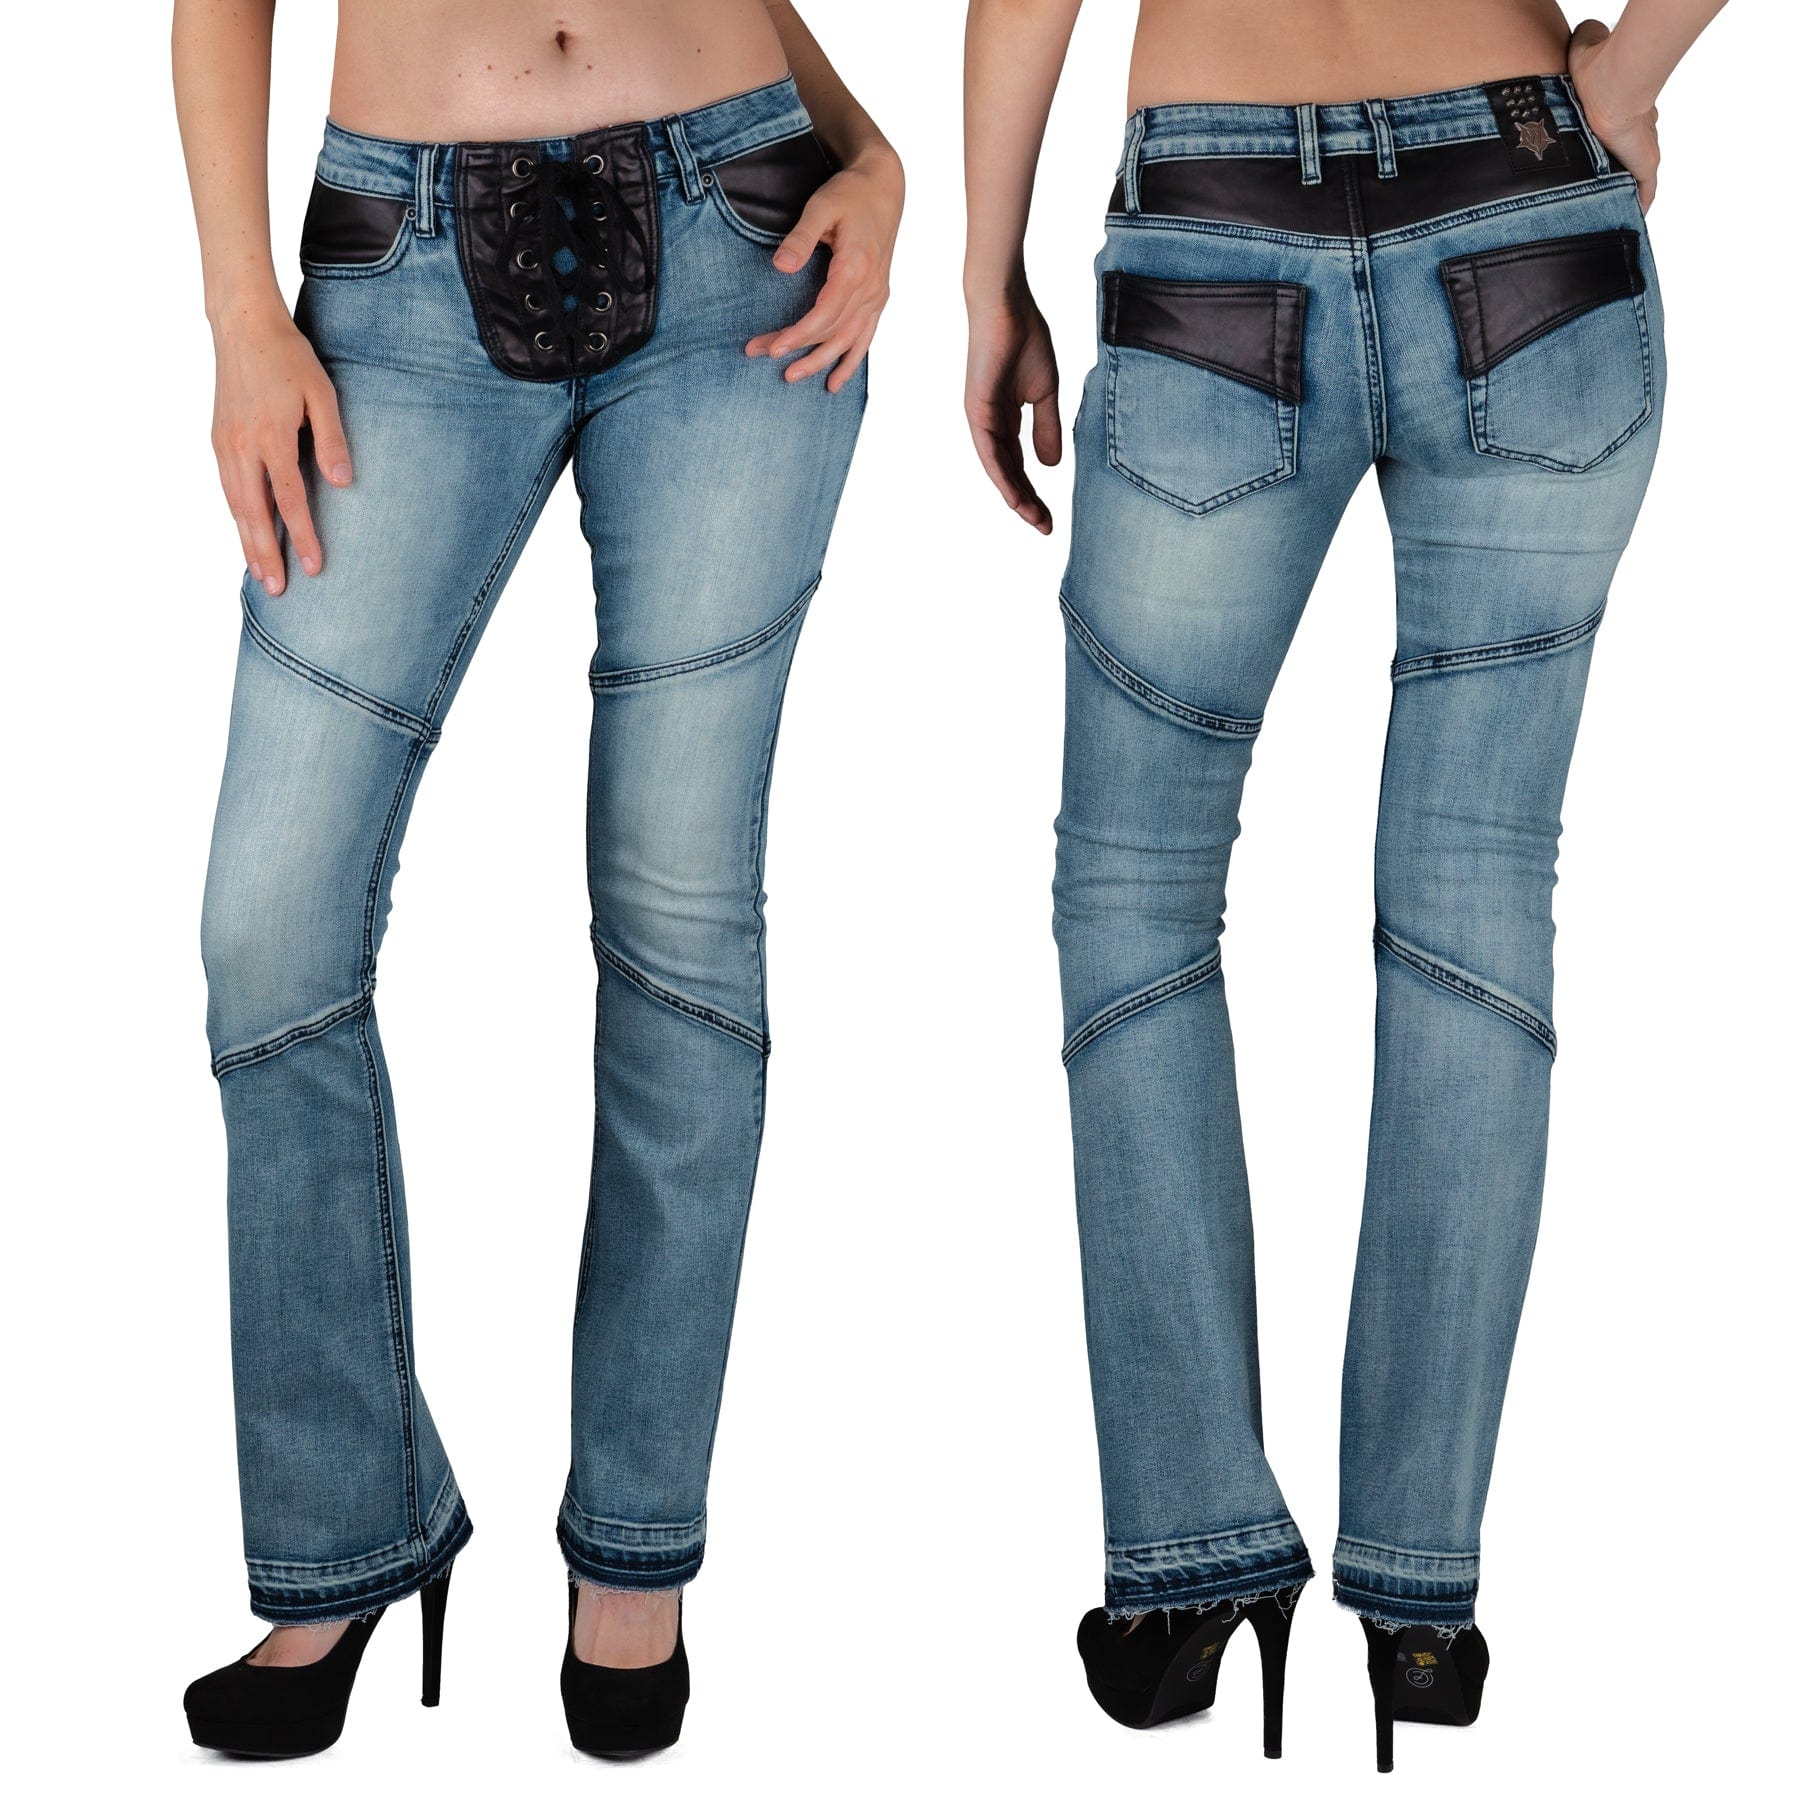 Wornstar Clothing Unisex Jeans. Troubadour Denim Jeans - Classic Blue